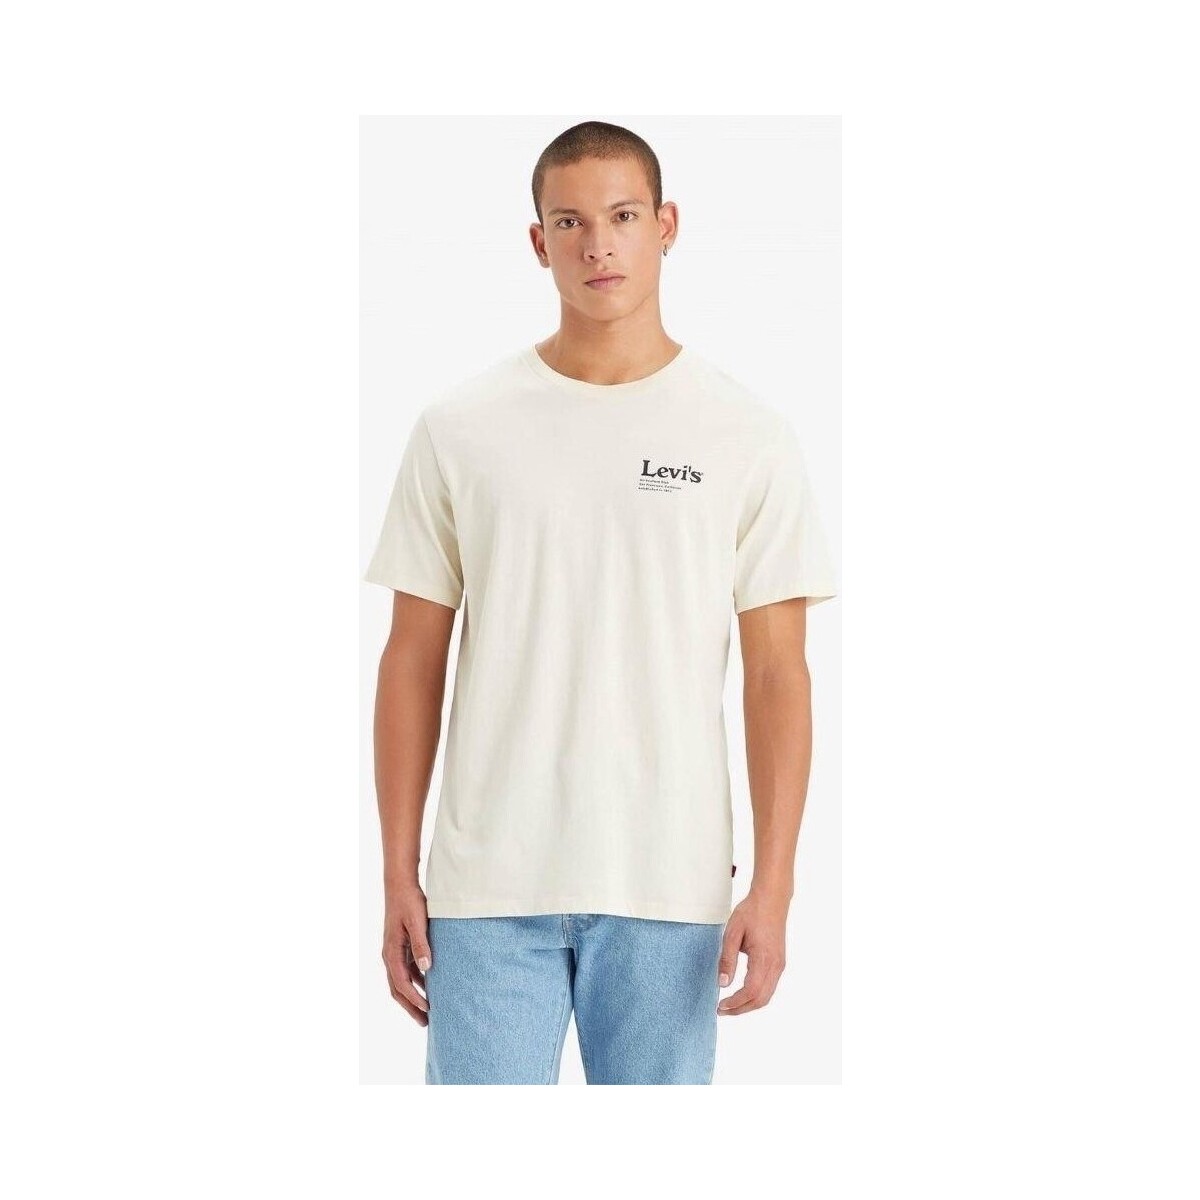 Vêtements Homme T-shirts manches courtes Levi's 22491 1493 GRAPHIC CREWNECK TEE Beige